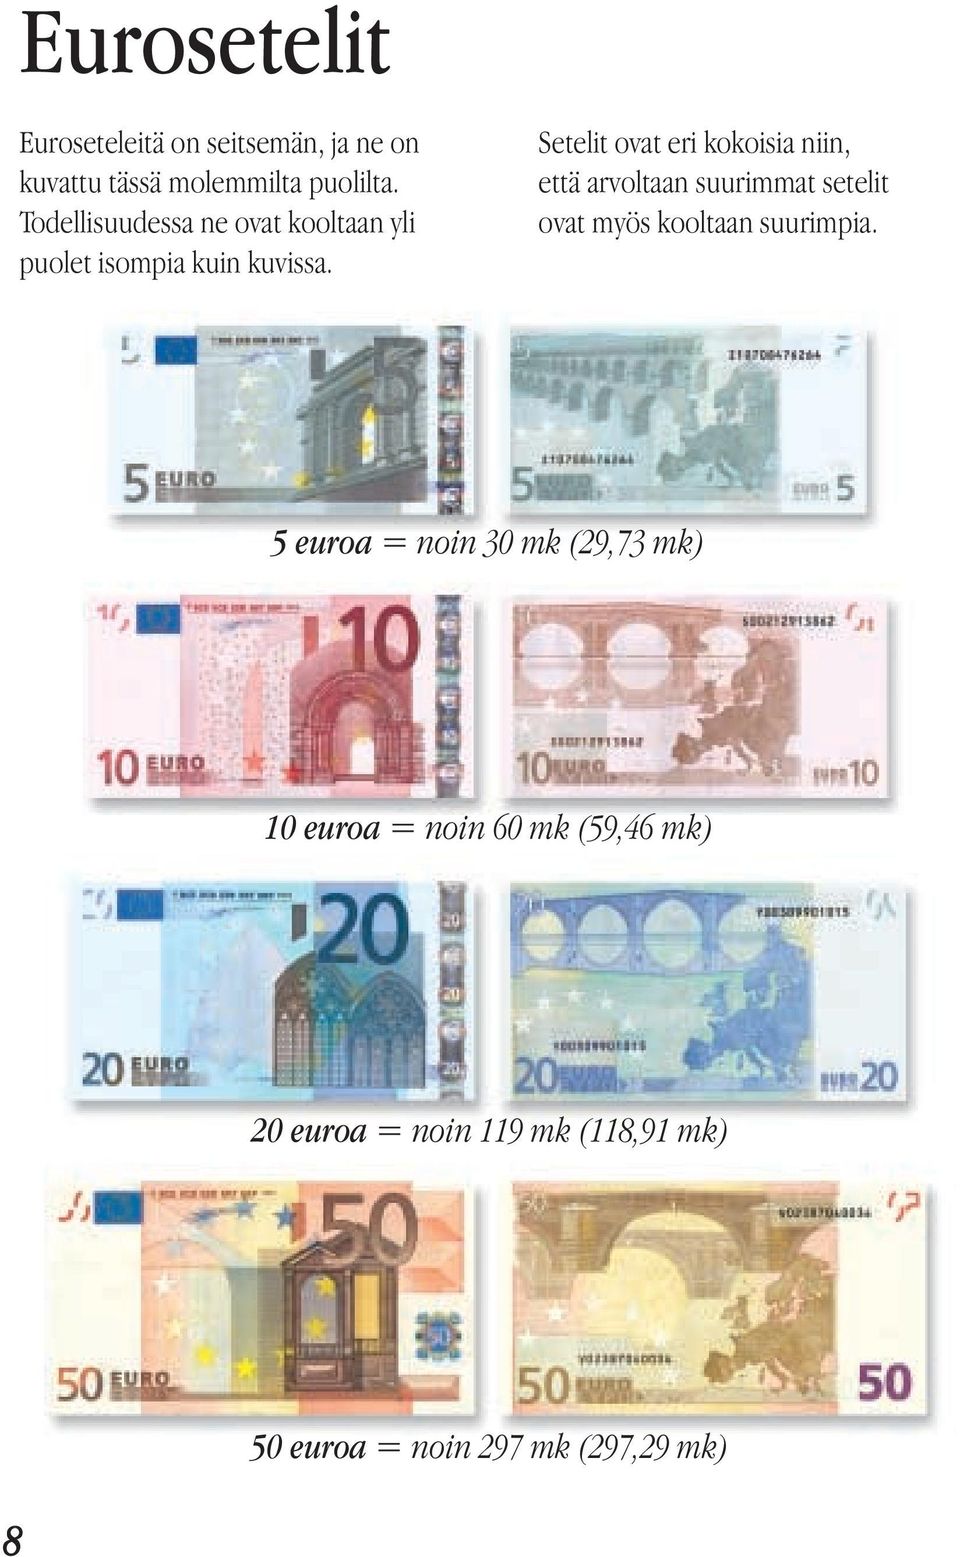 Setelit ovat eri kokoisia niin, että arvoltaan suurimmat setelit ovat myös kooltaan suurimpia.